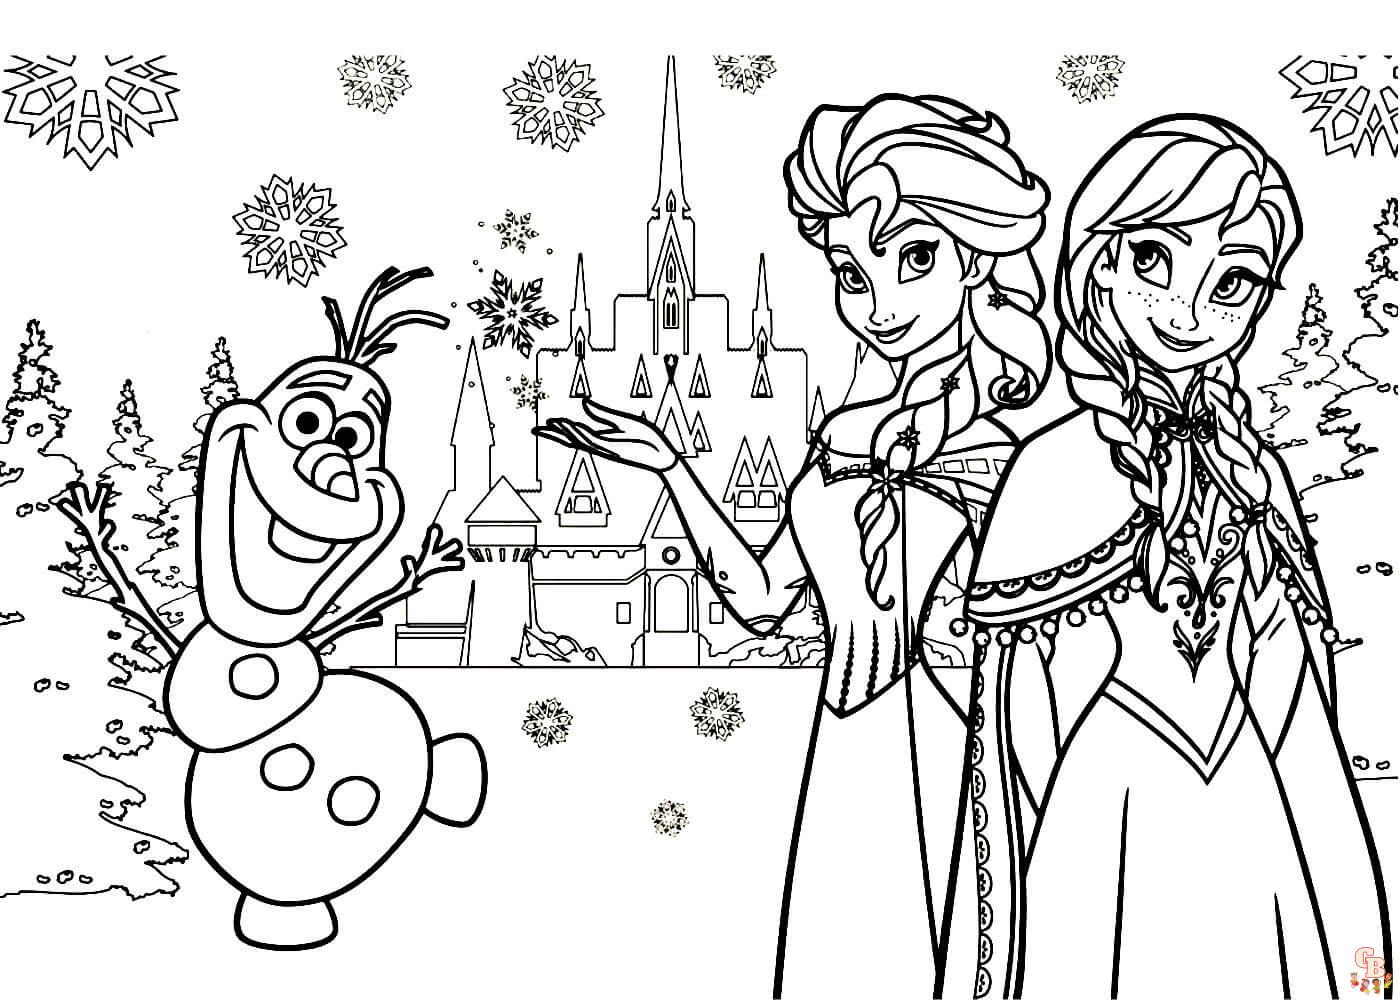 Frohe Weihnachten mit Elsa ausmalbilder zum ausdrucken